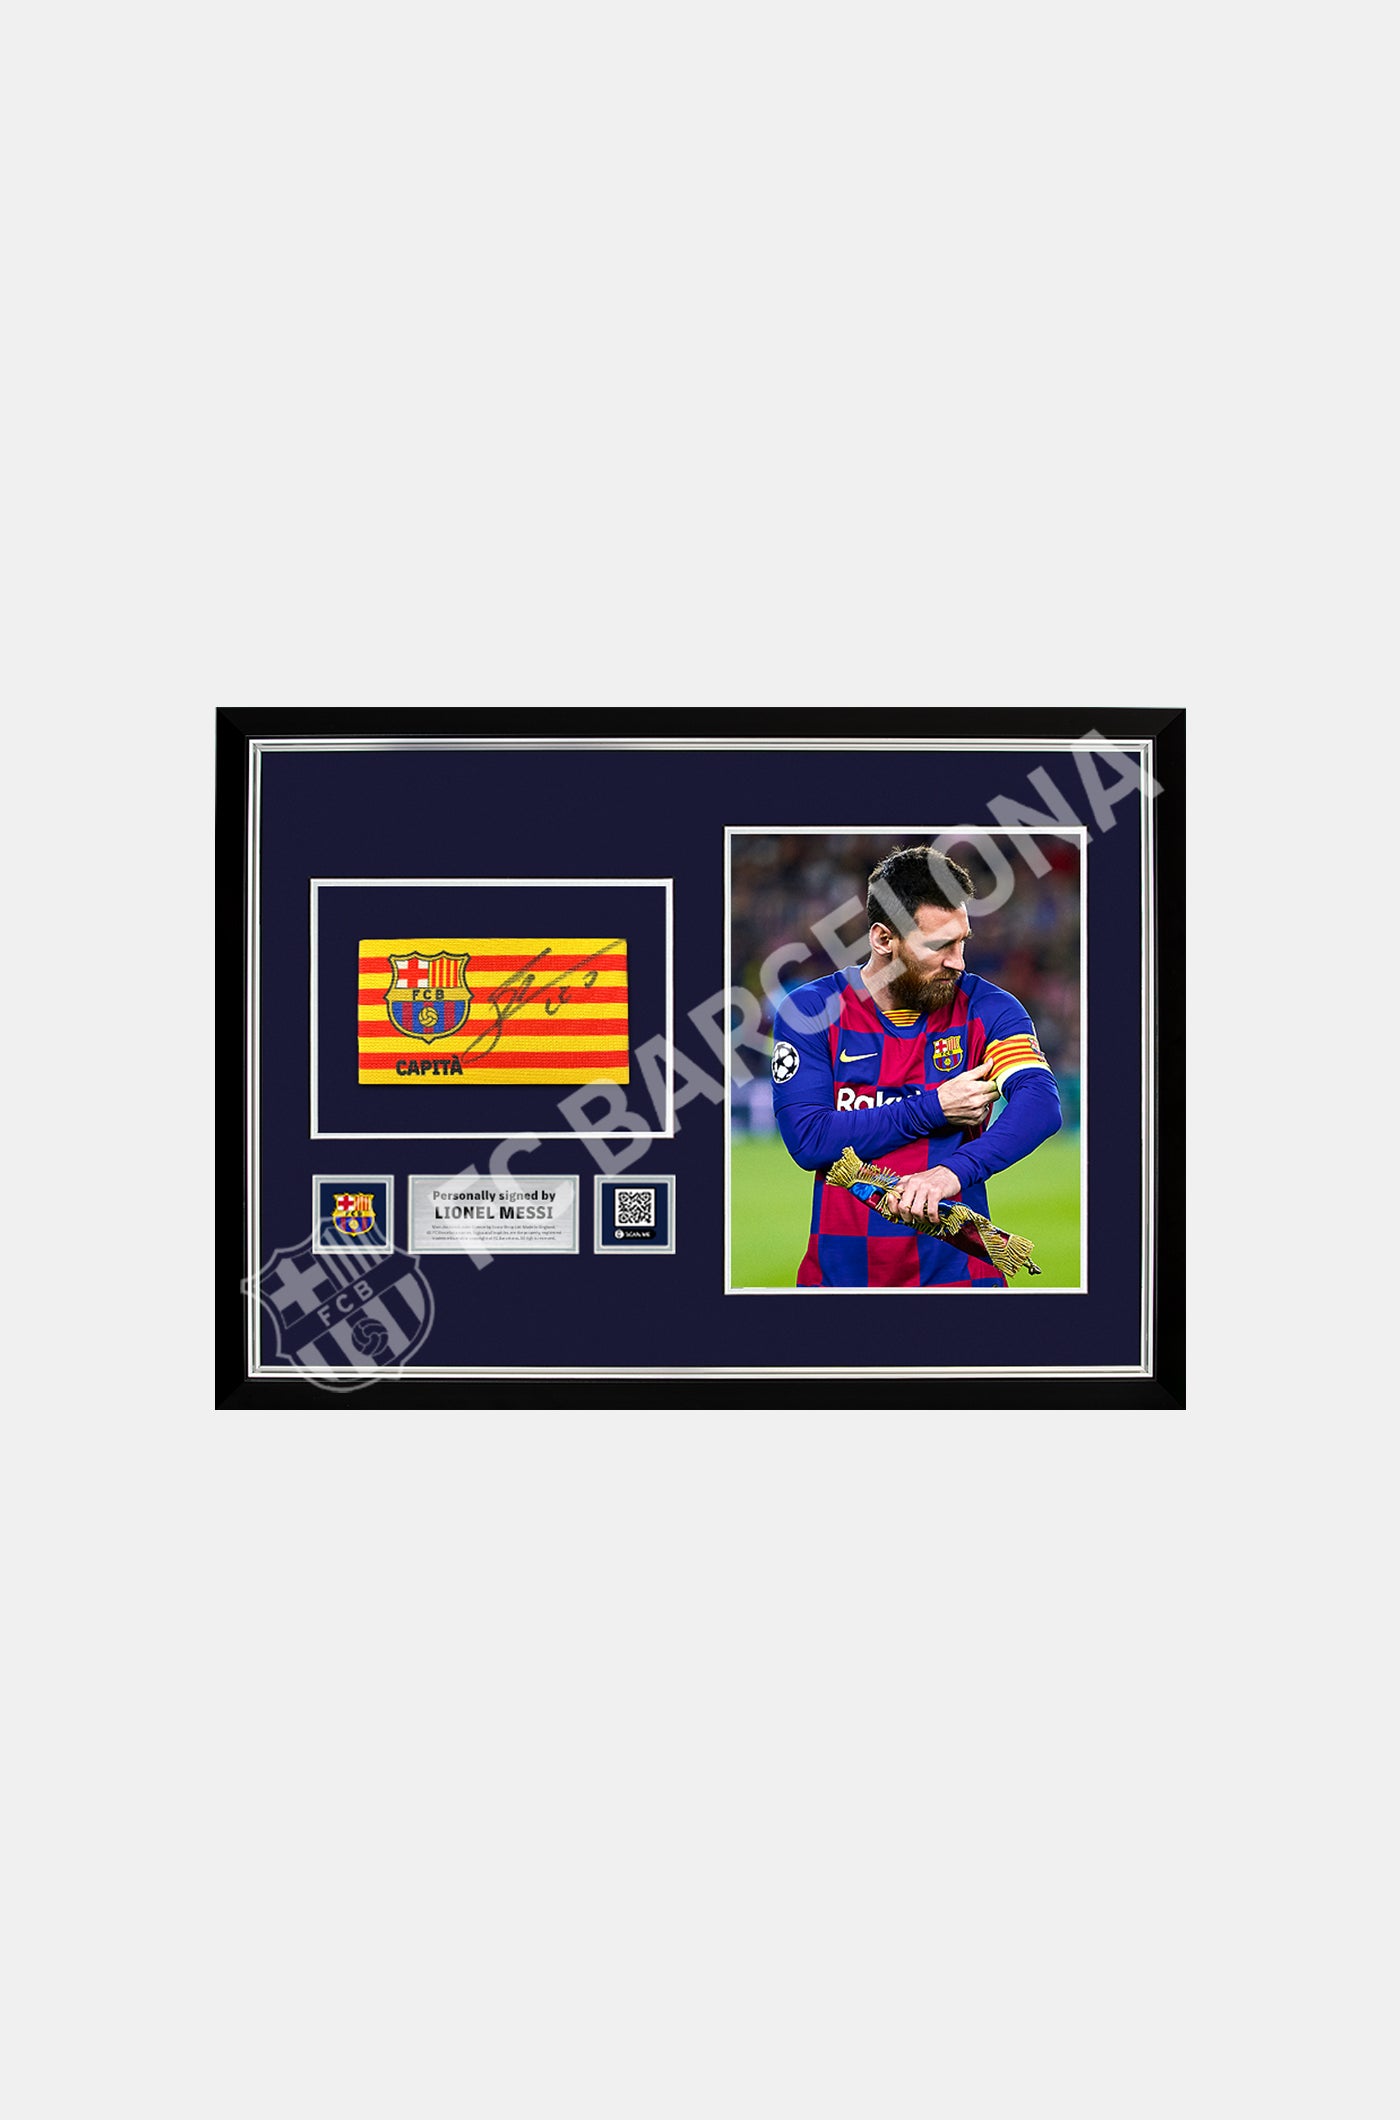 Braçalet de capità oficial del FC Barcelona signat per Leo Messi